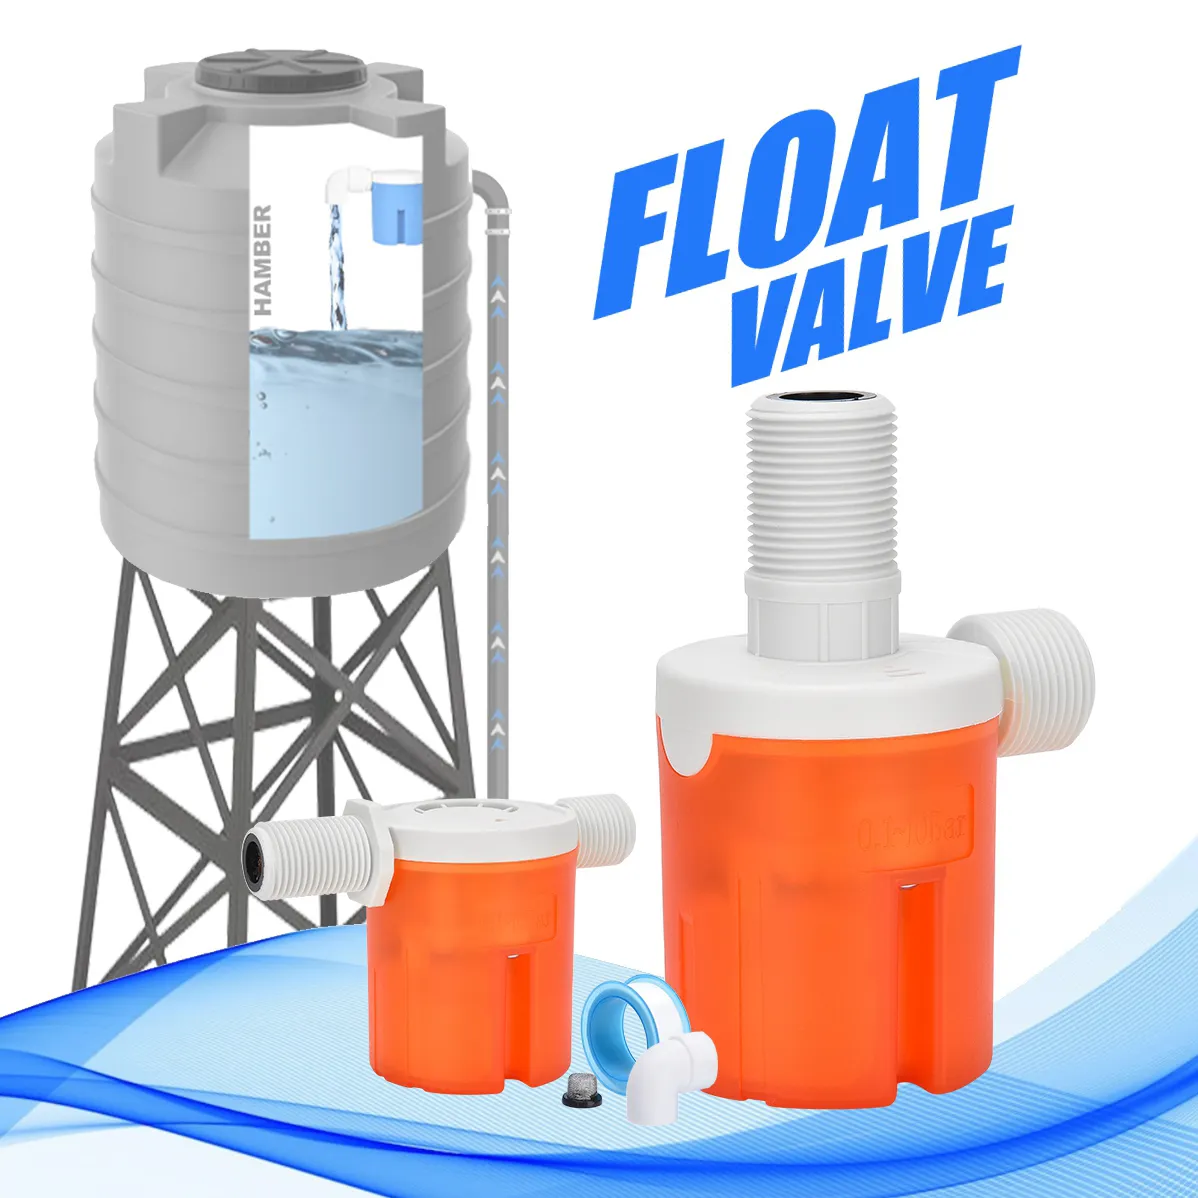 Size 1/2 3/4 Kleine water tank valve water level regelklep kleine vlotter